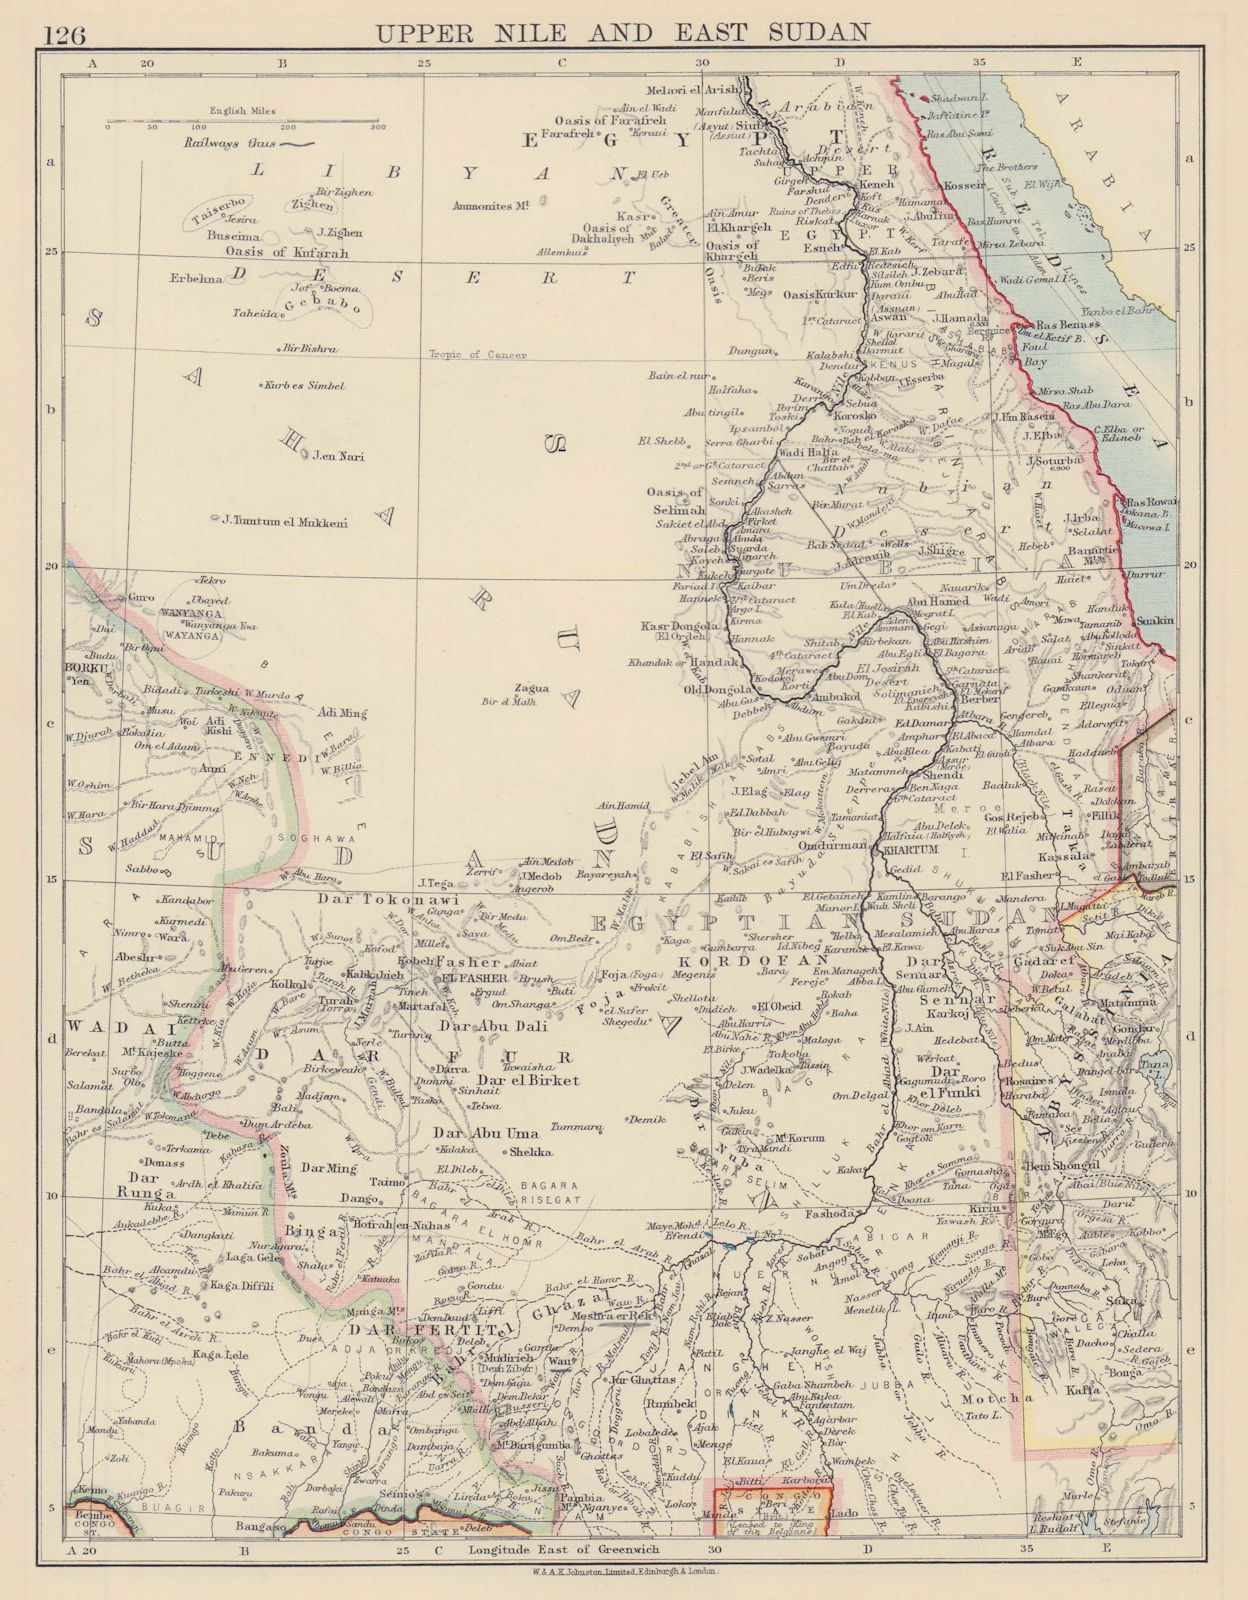 UPPER NILE & EAST SUDAN Khartoum White/Blue Nile Aswan Low Dam JOHNSTON 1901 map